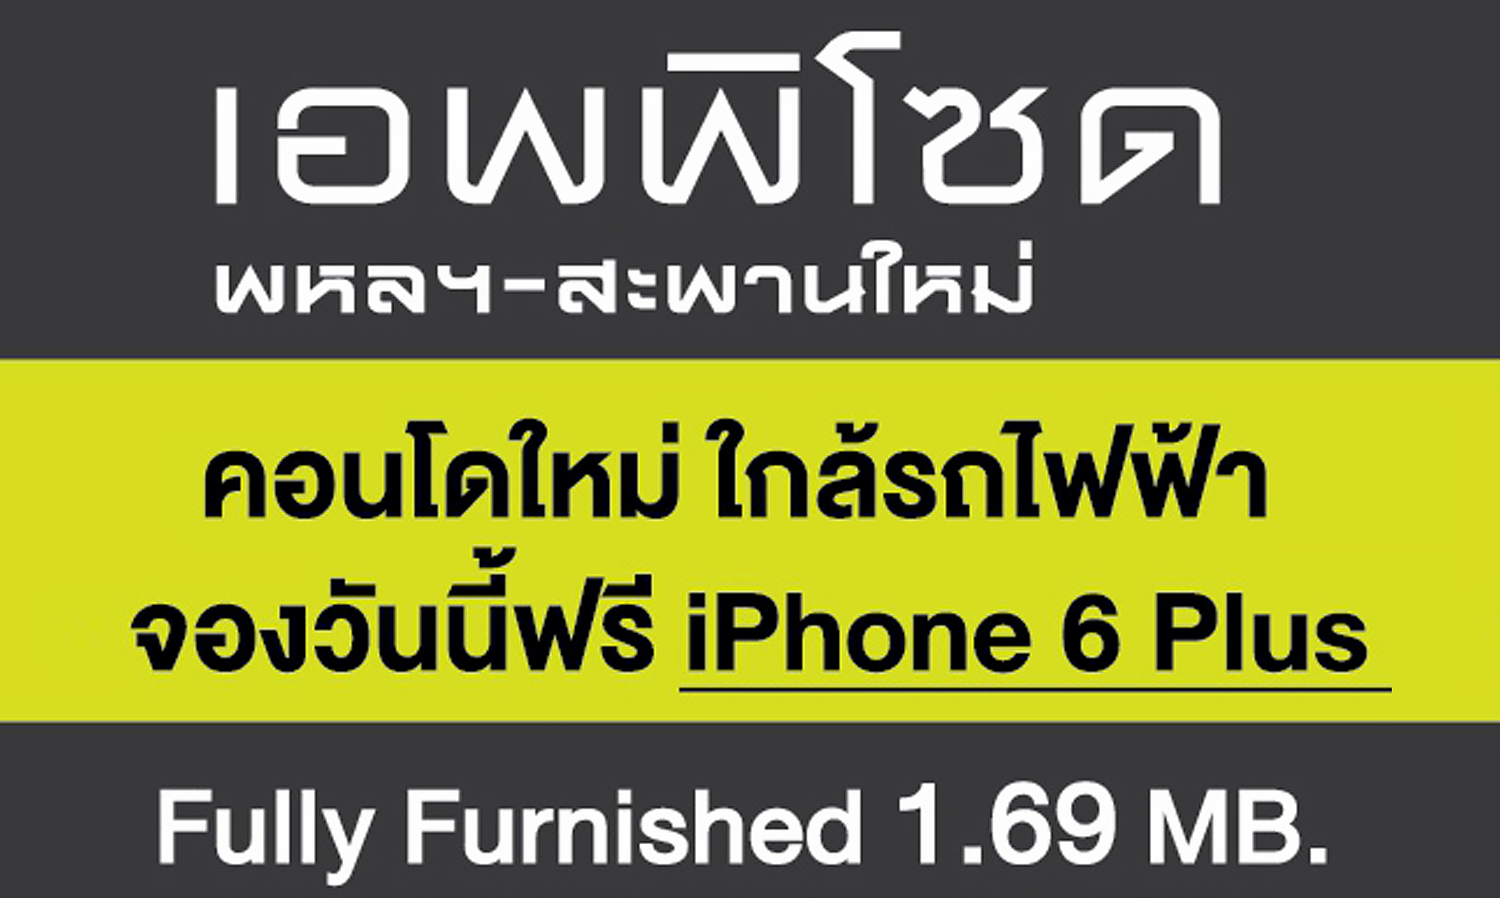 แอสเซทไวส์ จัดโปรฯแรง จองวันนี้ ฟรี iPhone 6 Plus